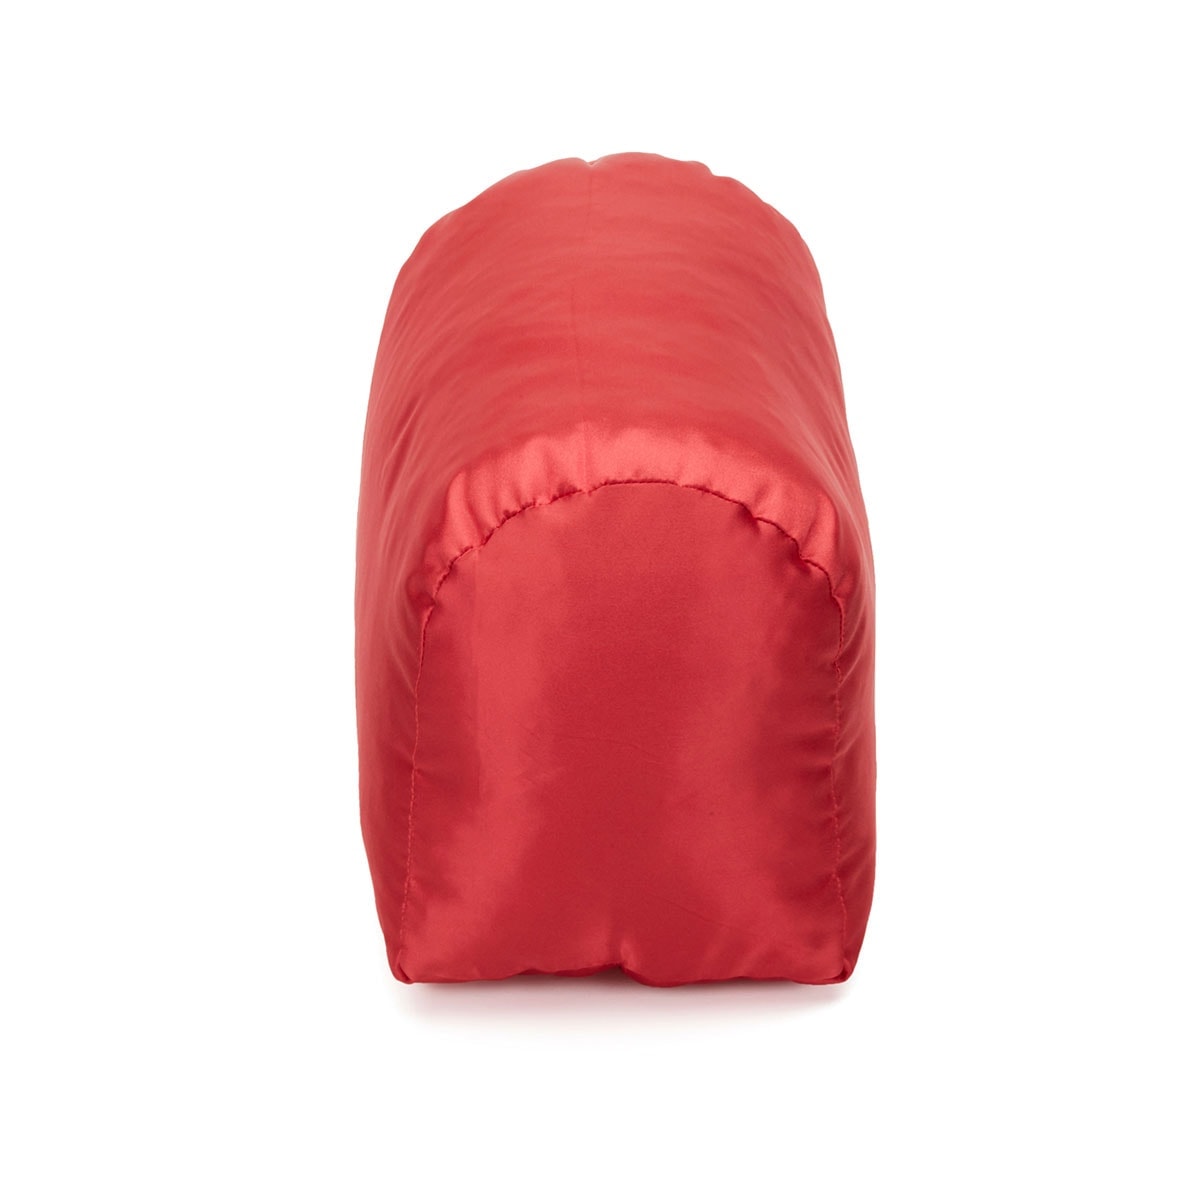 Satin Pillow Luxury Bag Shaper For Louis Vuitton's Speedy 25, Speedy 30, Speedy  35 and Speedy 40 in Burgundy